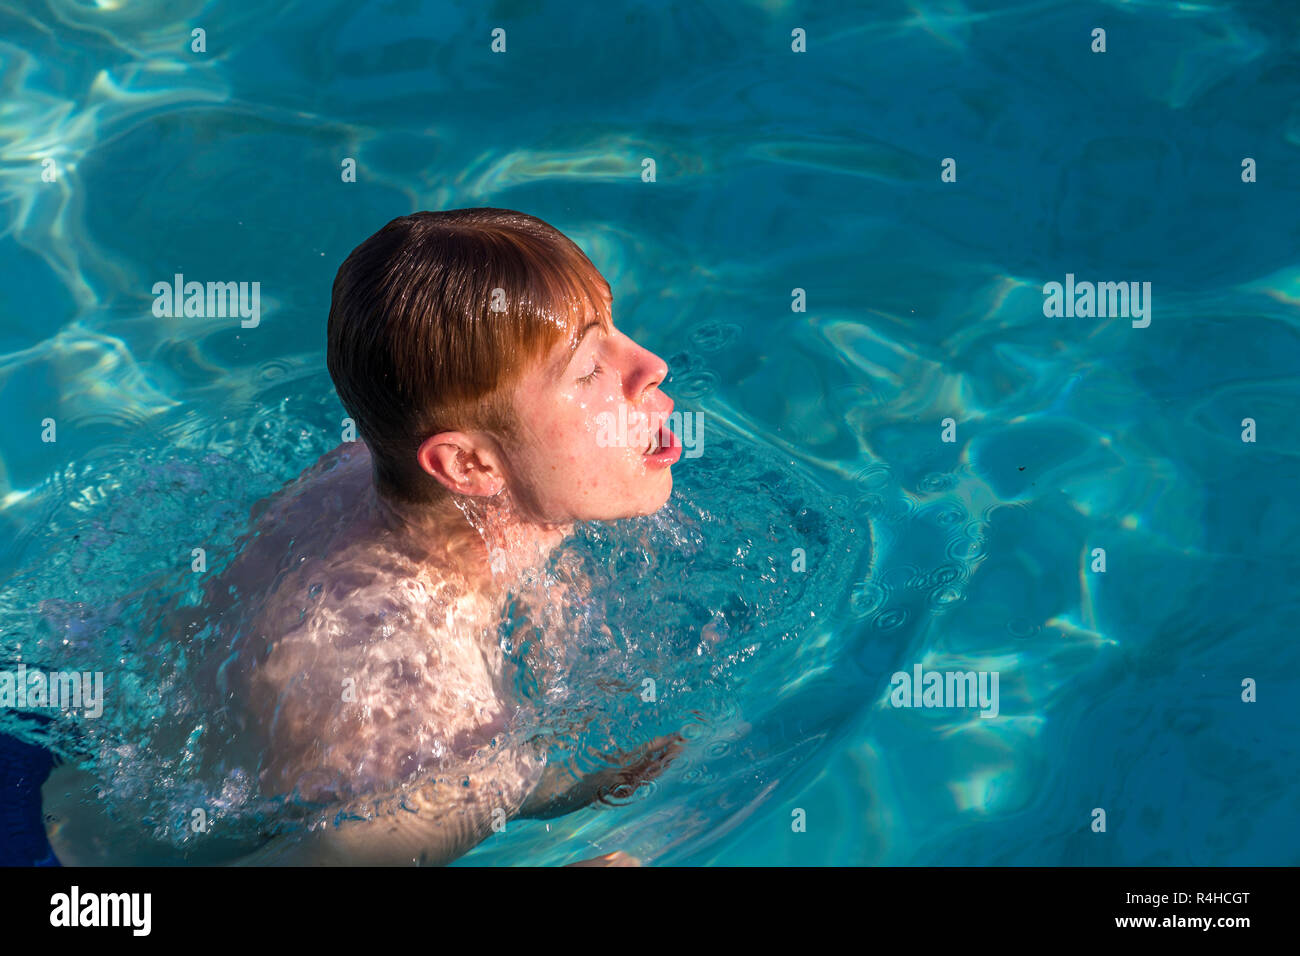 Junge Genießt Das Schwimmen Im Pool Stockfotografie Alamy